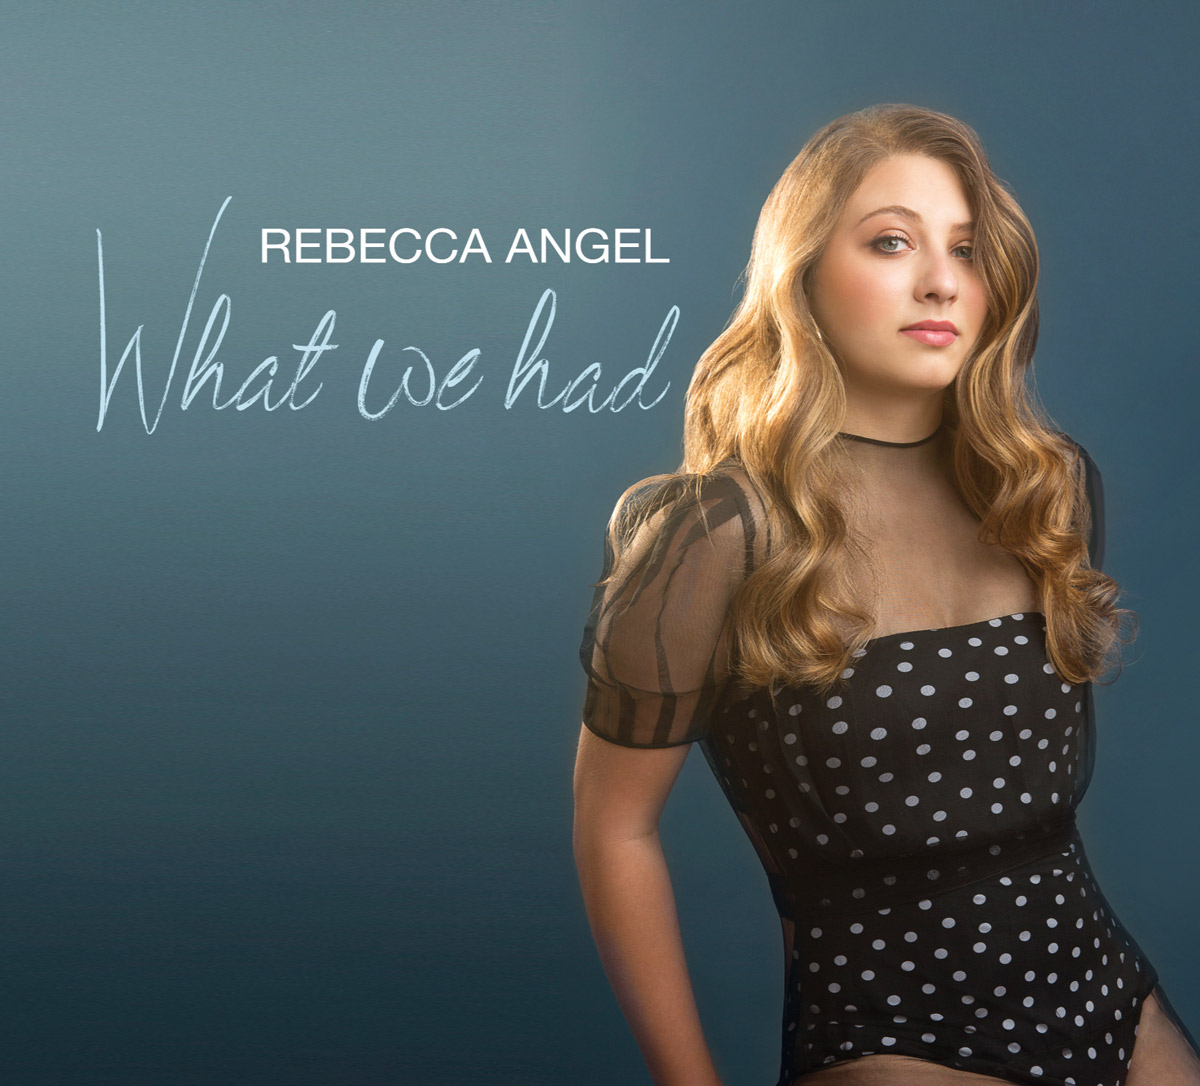 Rebecca Angel's new EPK: What we Had